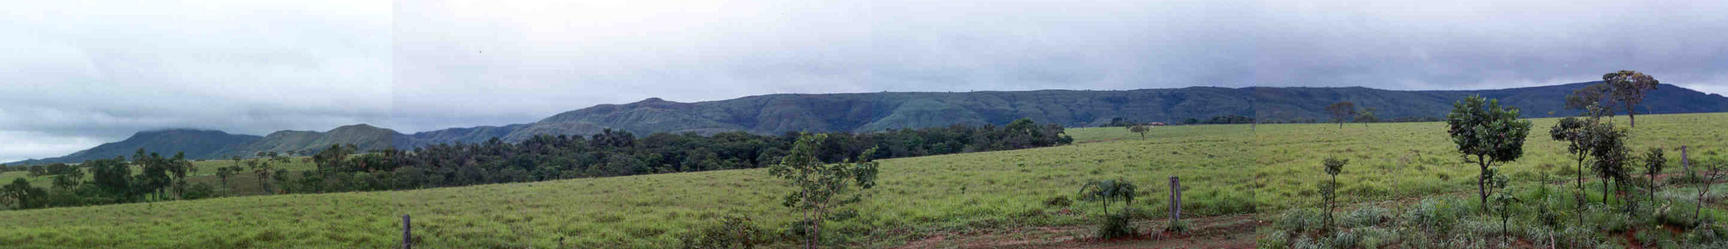 Landscape Near Barro Alto city.